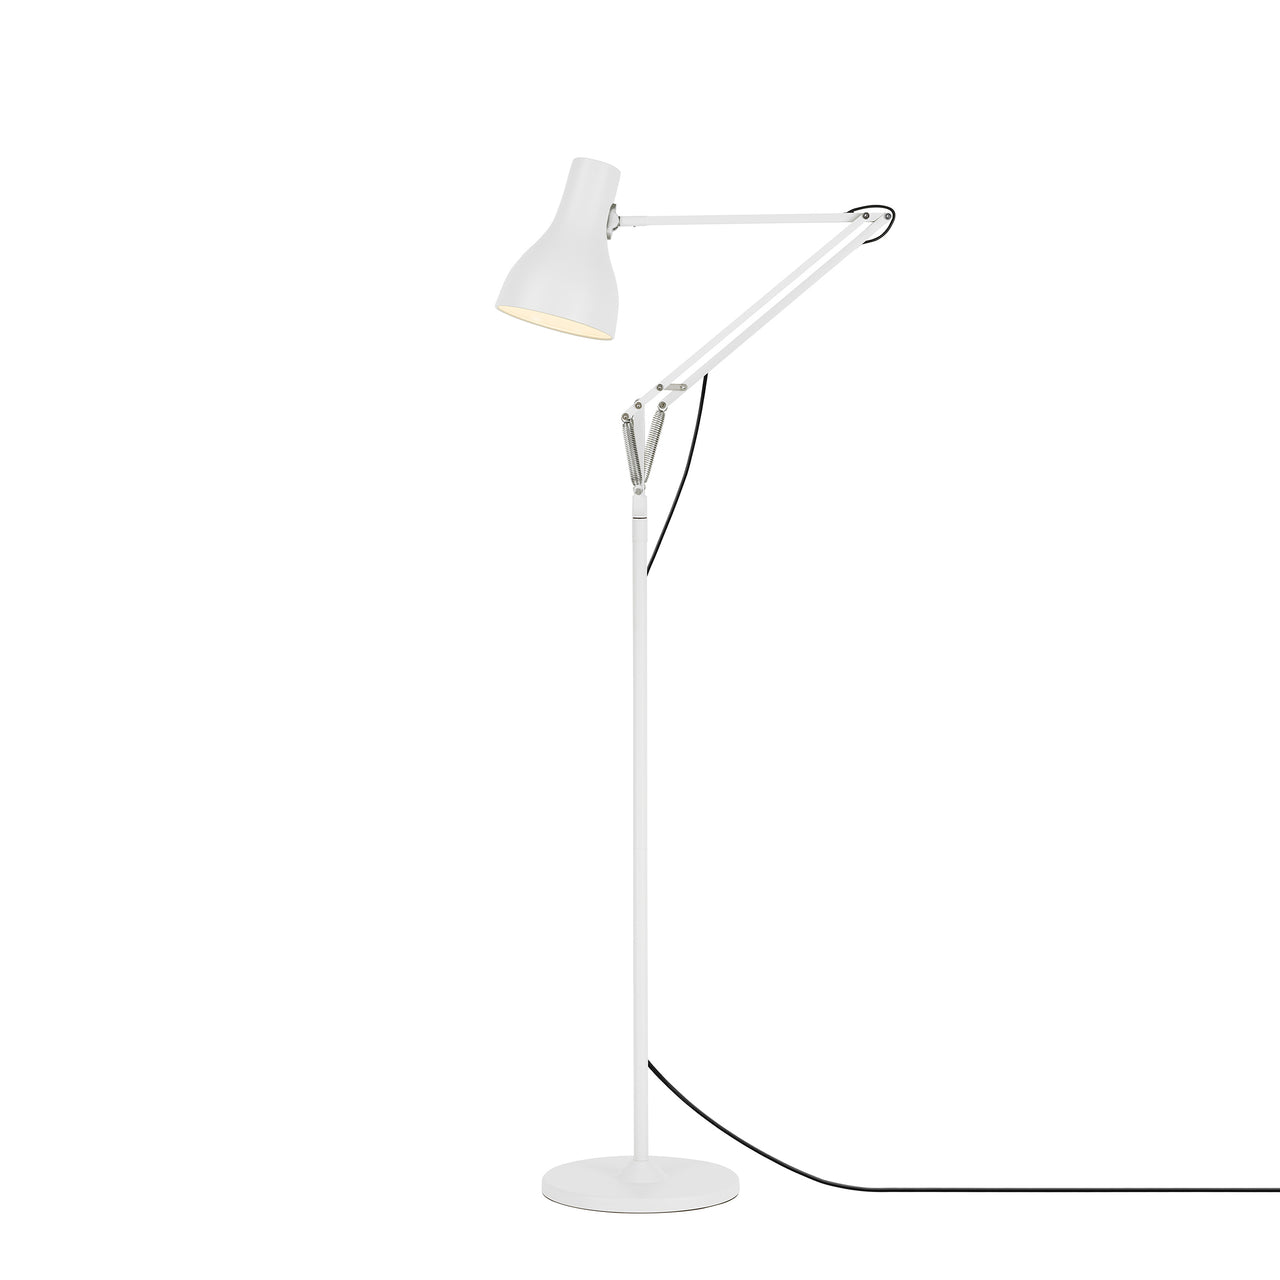 Type 75 Floor Lamp: Alpine White